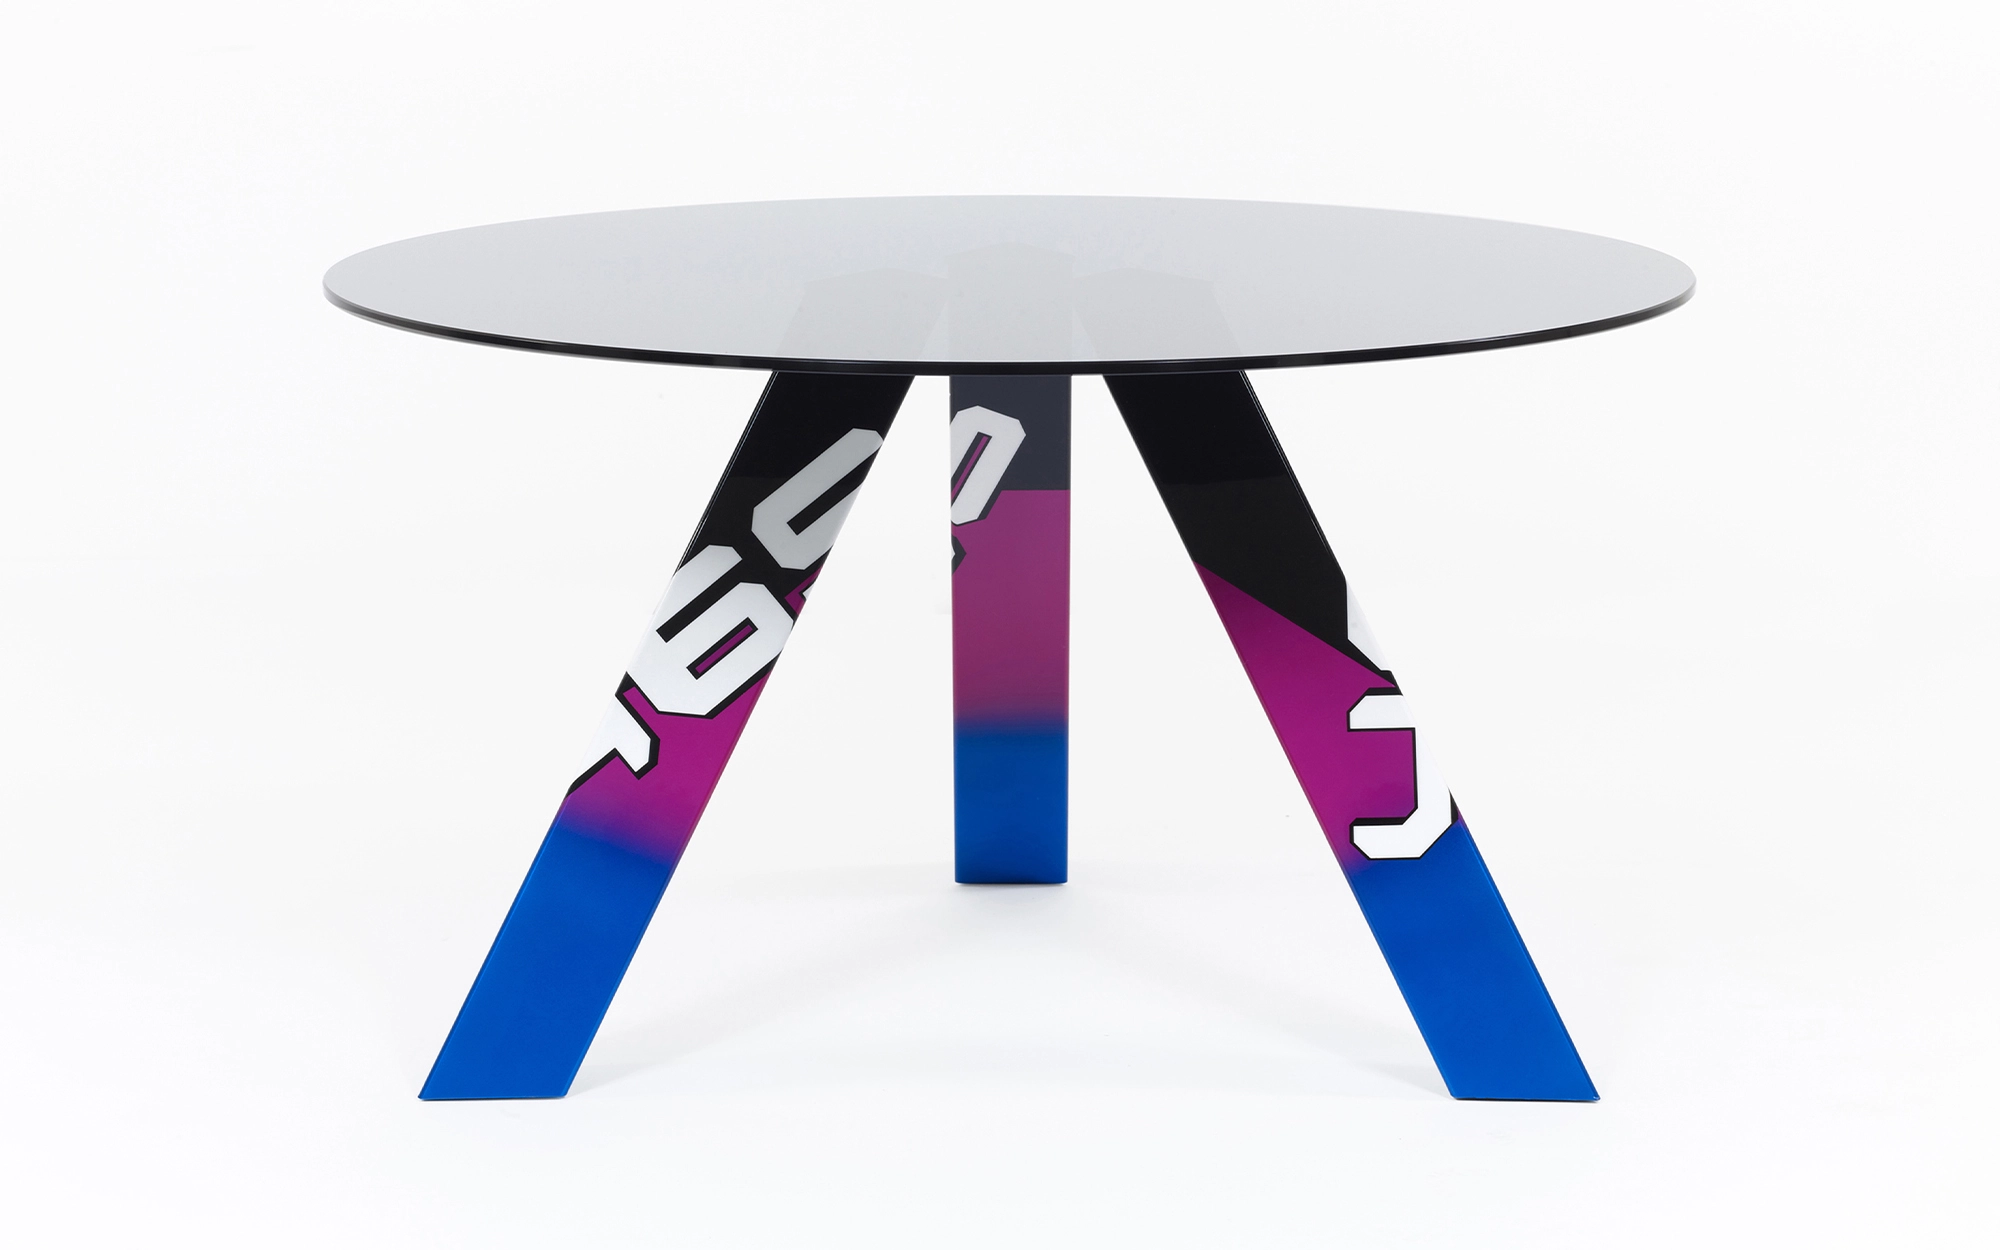 465 Table - Konstantin Grcic - Storage - Galerie kreo